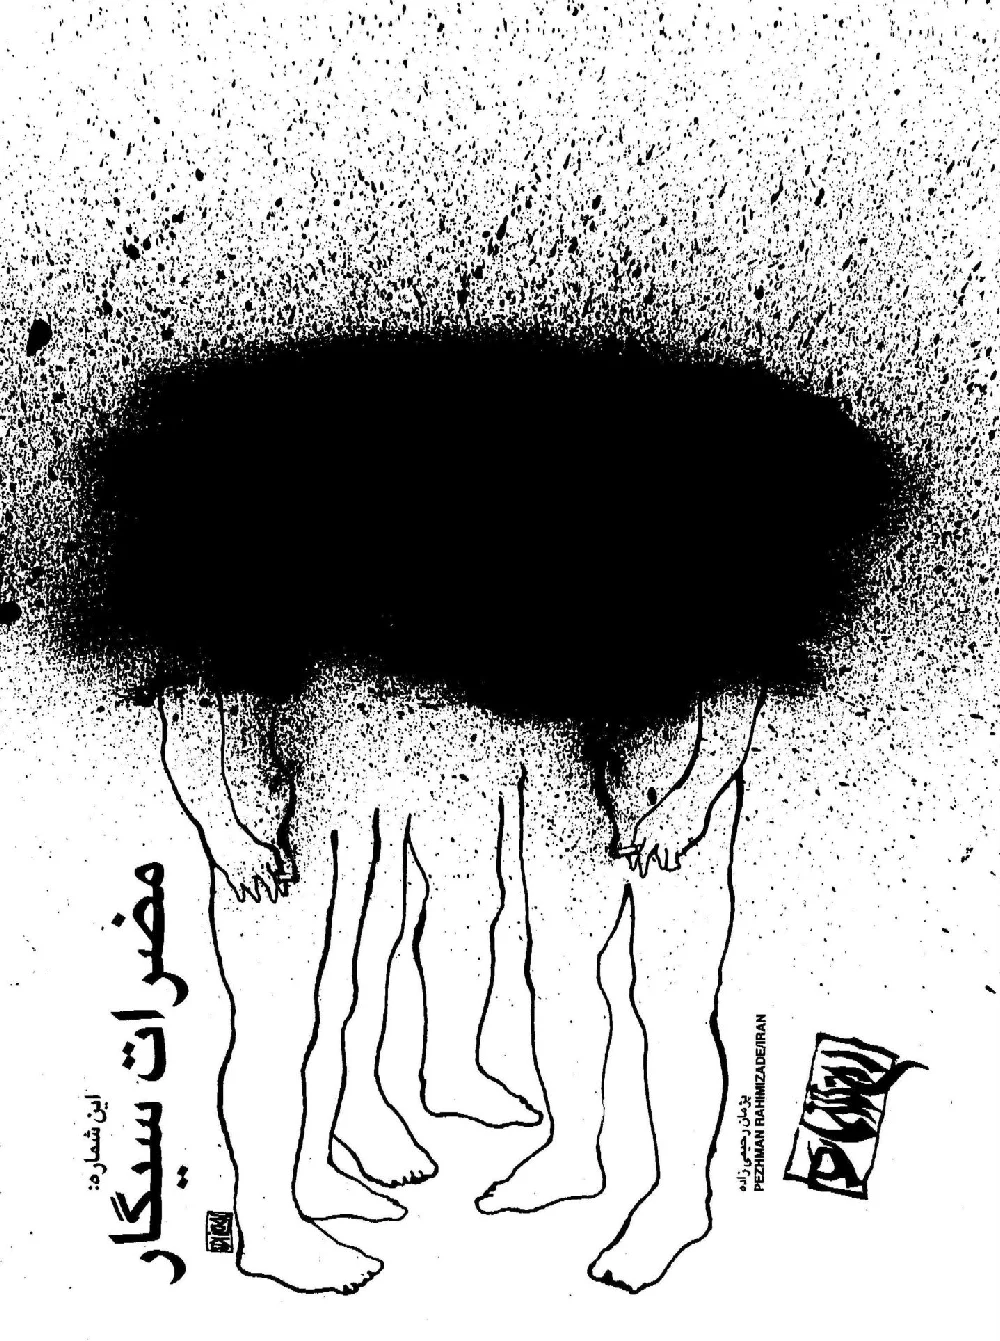 کیهان کاریکاتور، مضرات سیگار - شماره 37 - فروردین و اردیبهشت 1374